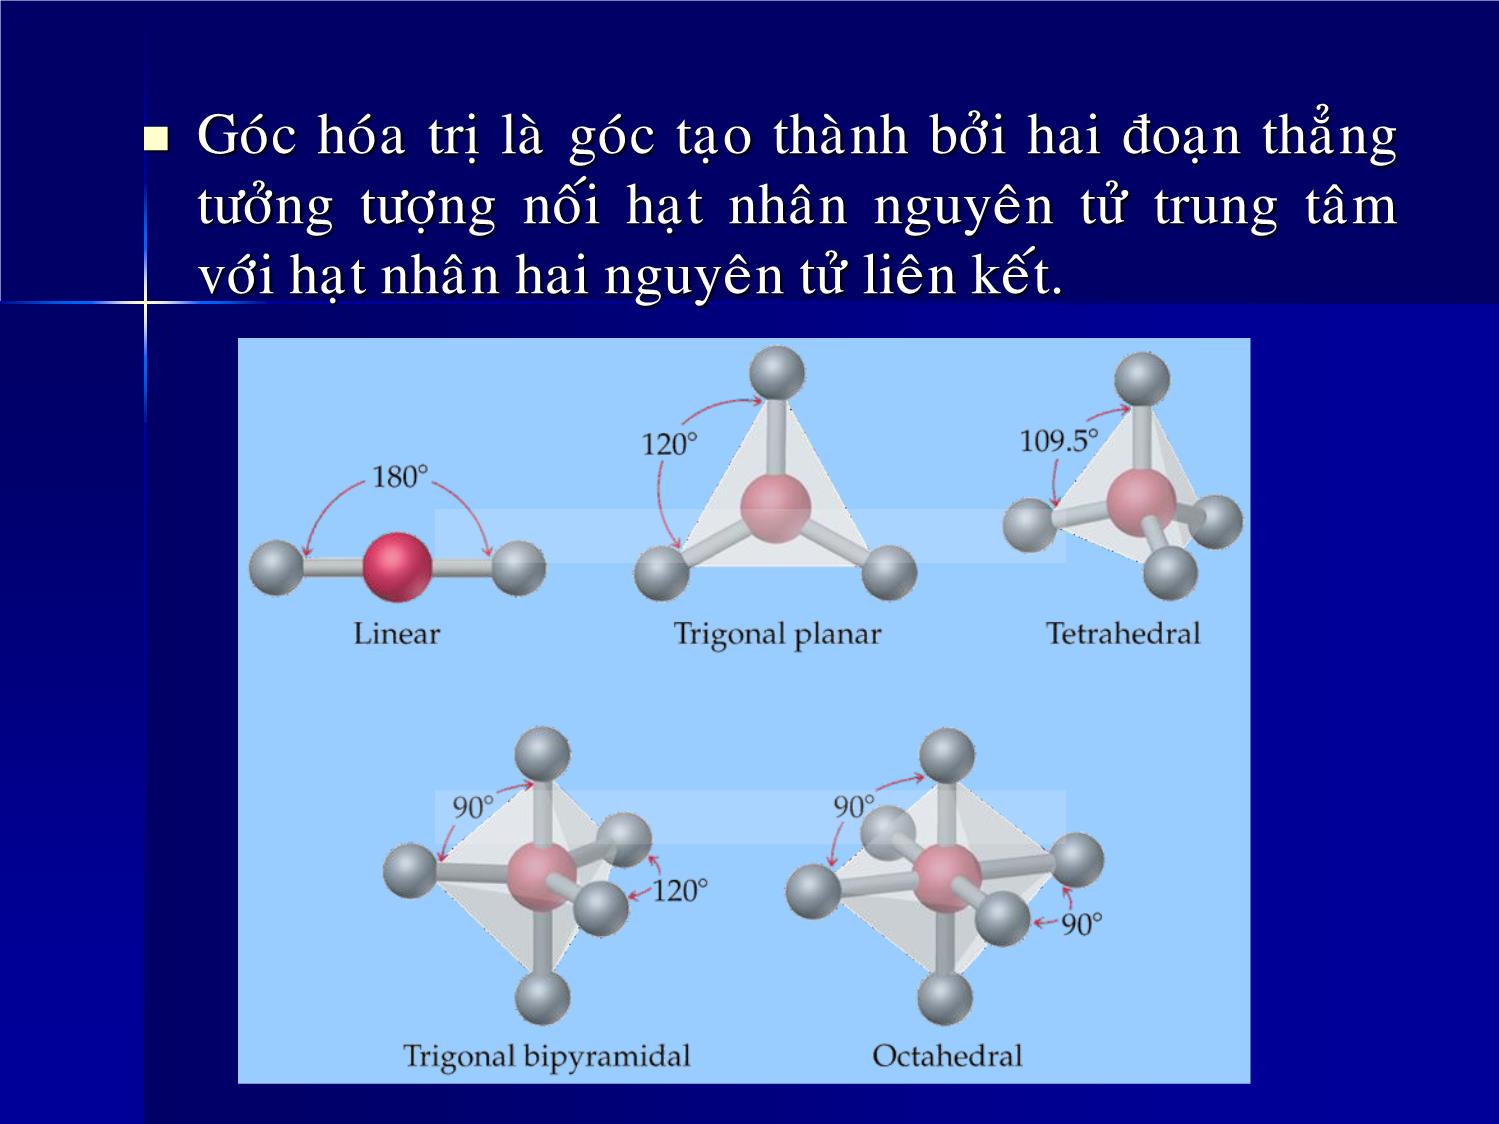 Bài giảng Hóa đại cương - Chương 4: Liên kết hóa học và cấu tạo phân tử - Huỳnh Kỳ Phương Hạ trang 3